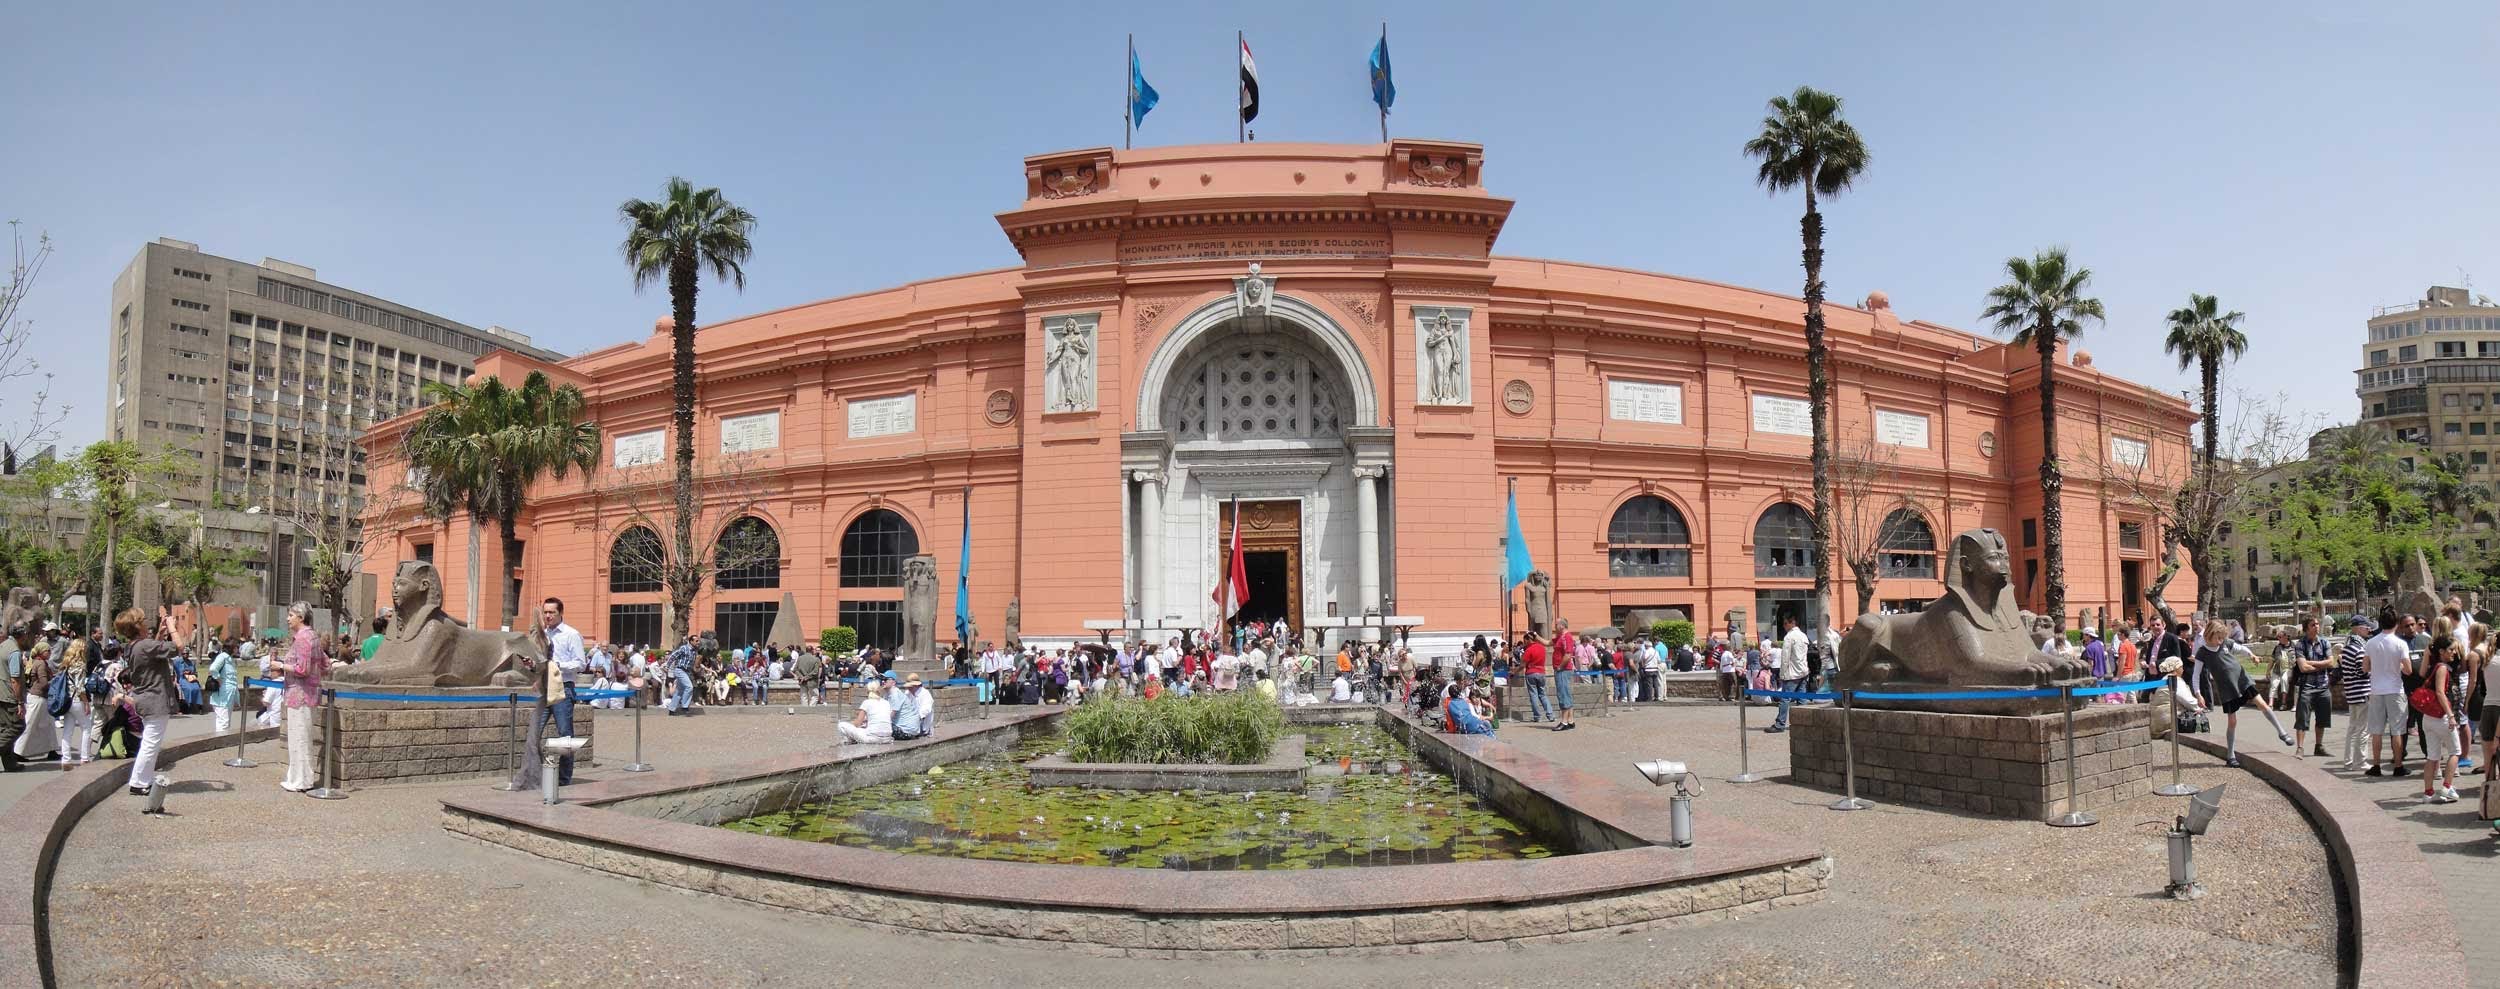 1496581278 المتحف المصري1707570483